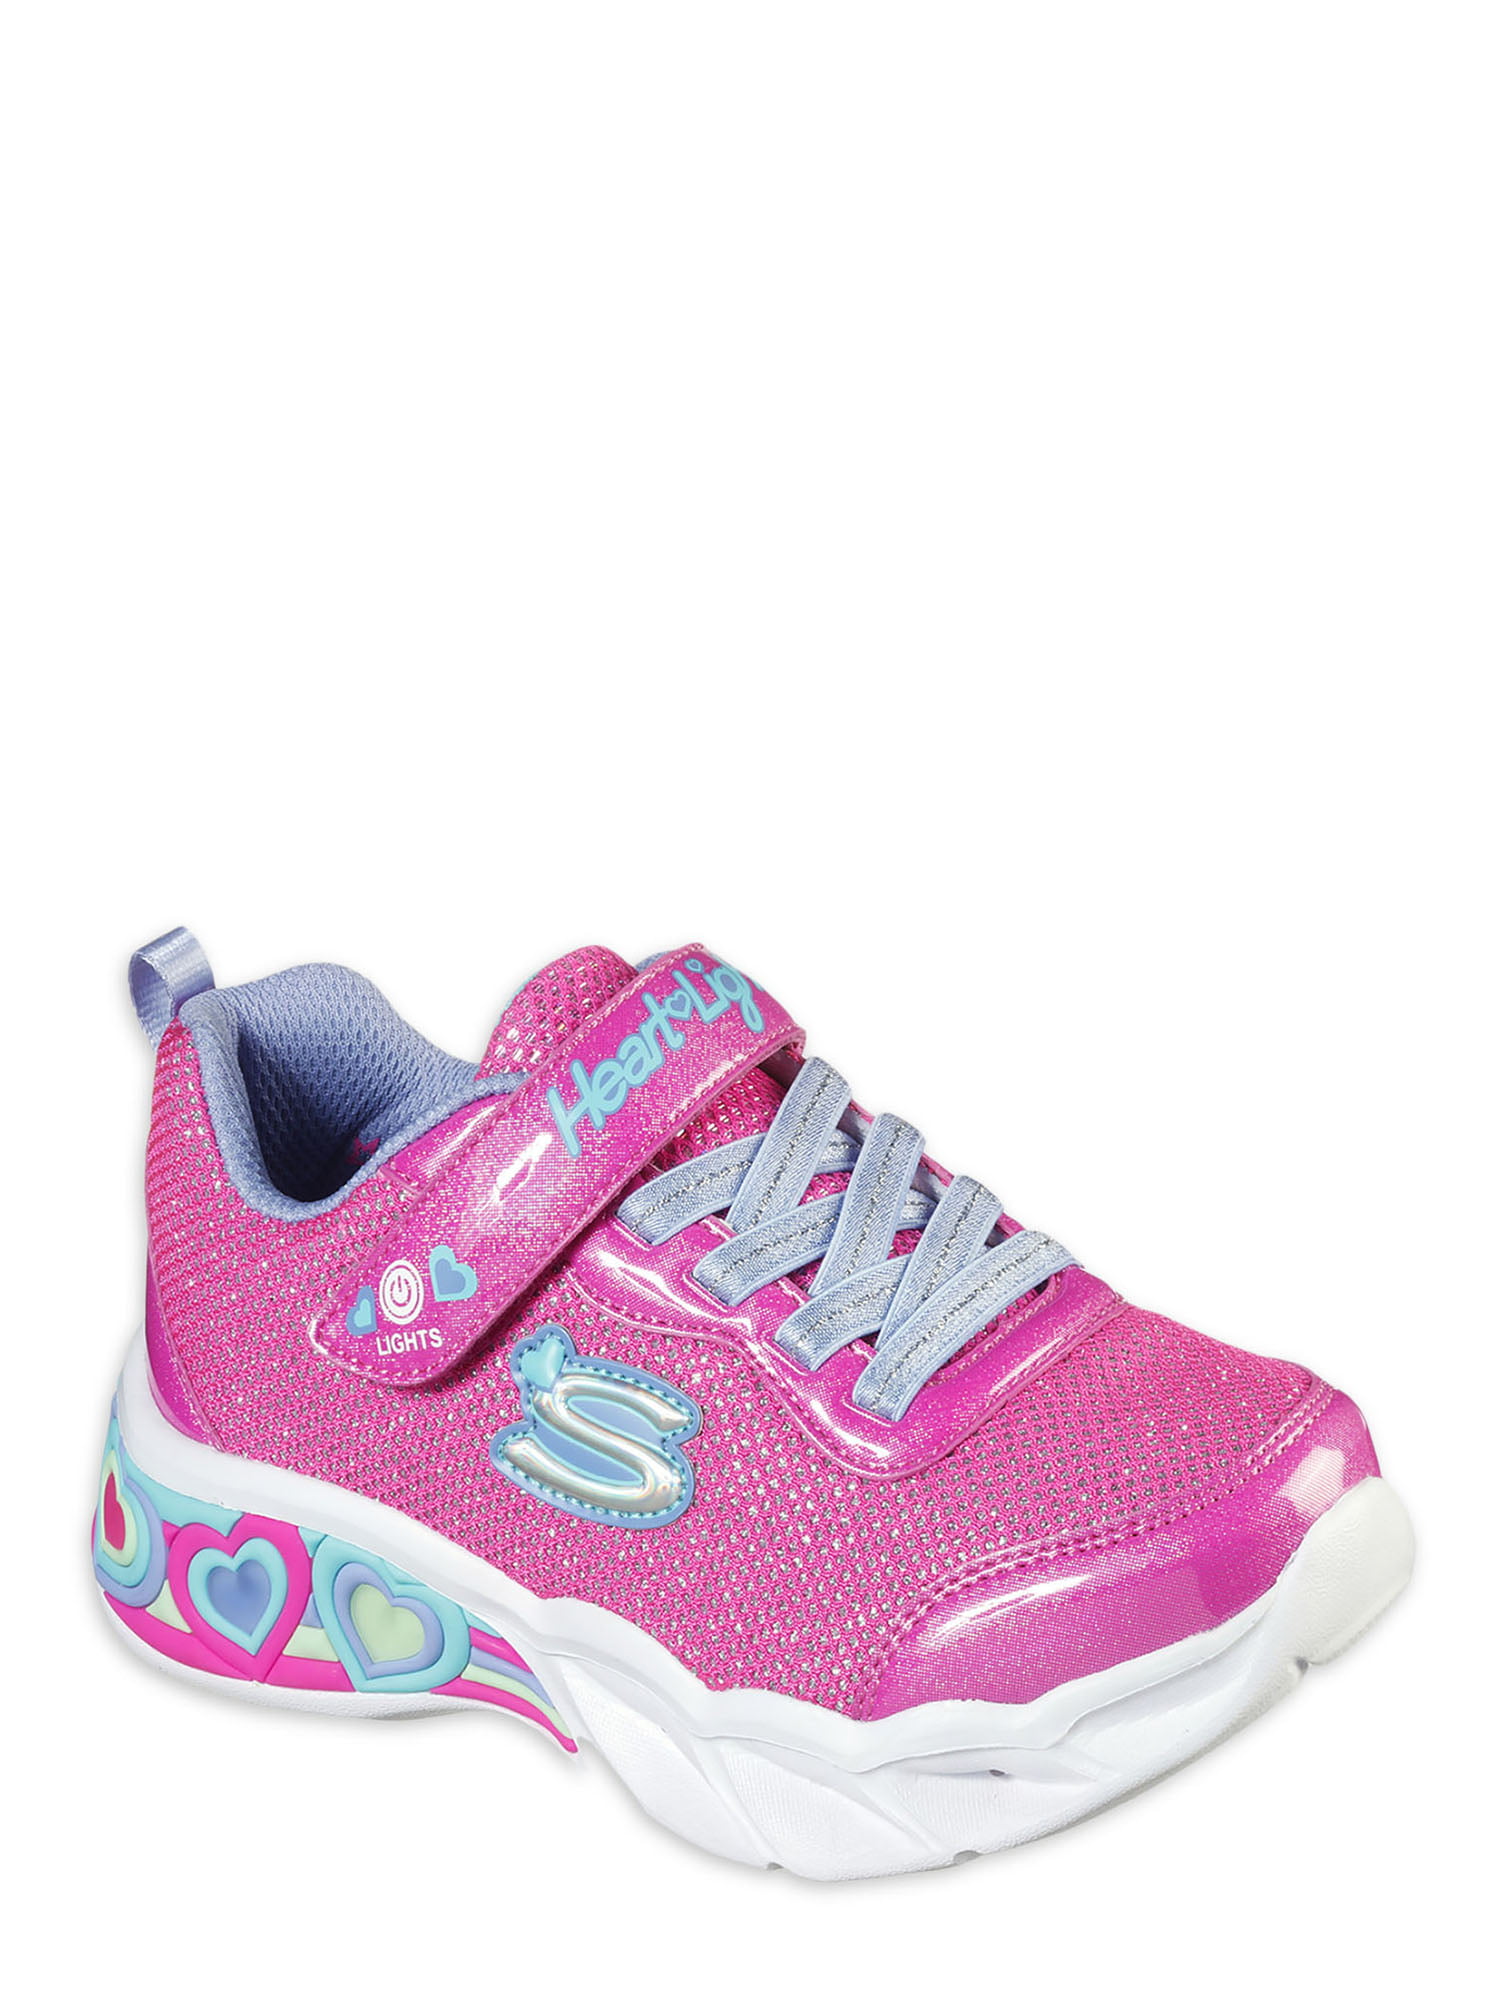 Skechers S Lights: Lights Sneakers (Little Girl Big Girl) - Walmart.com